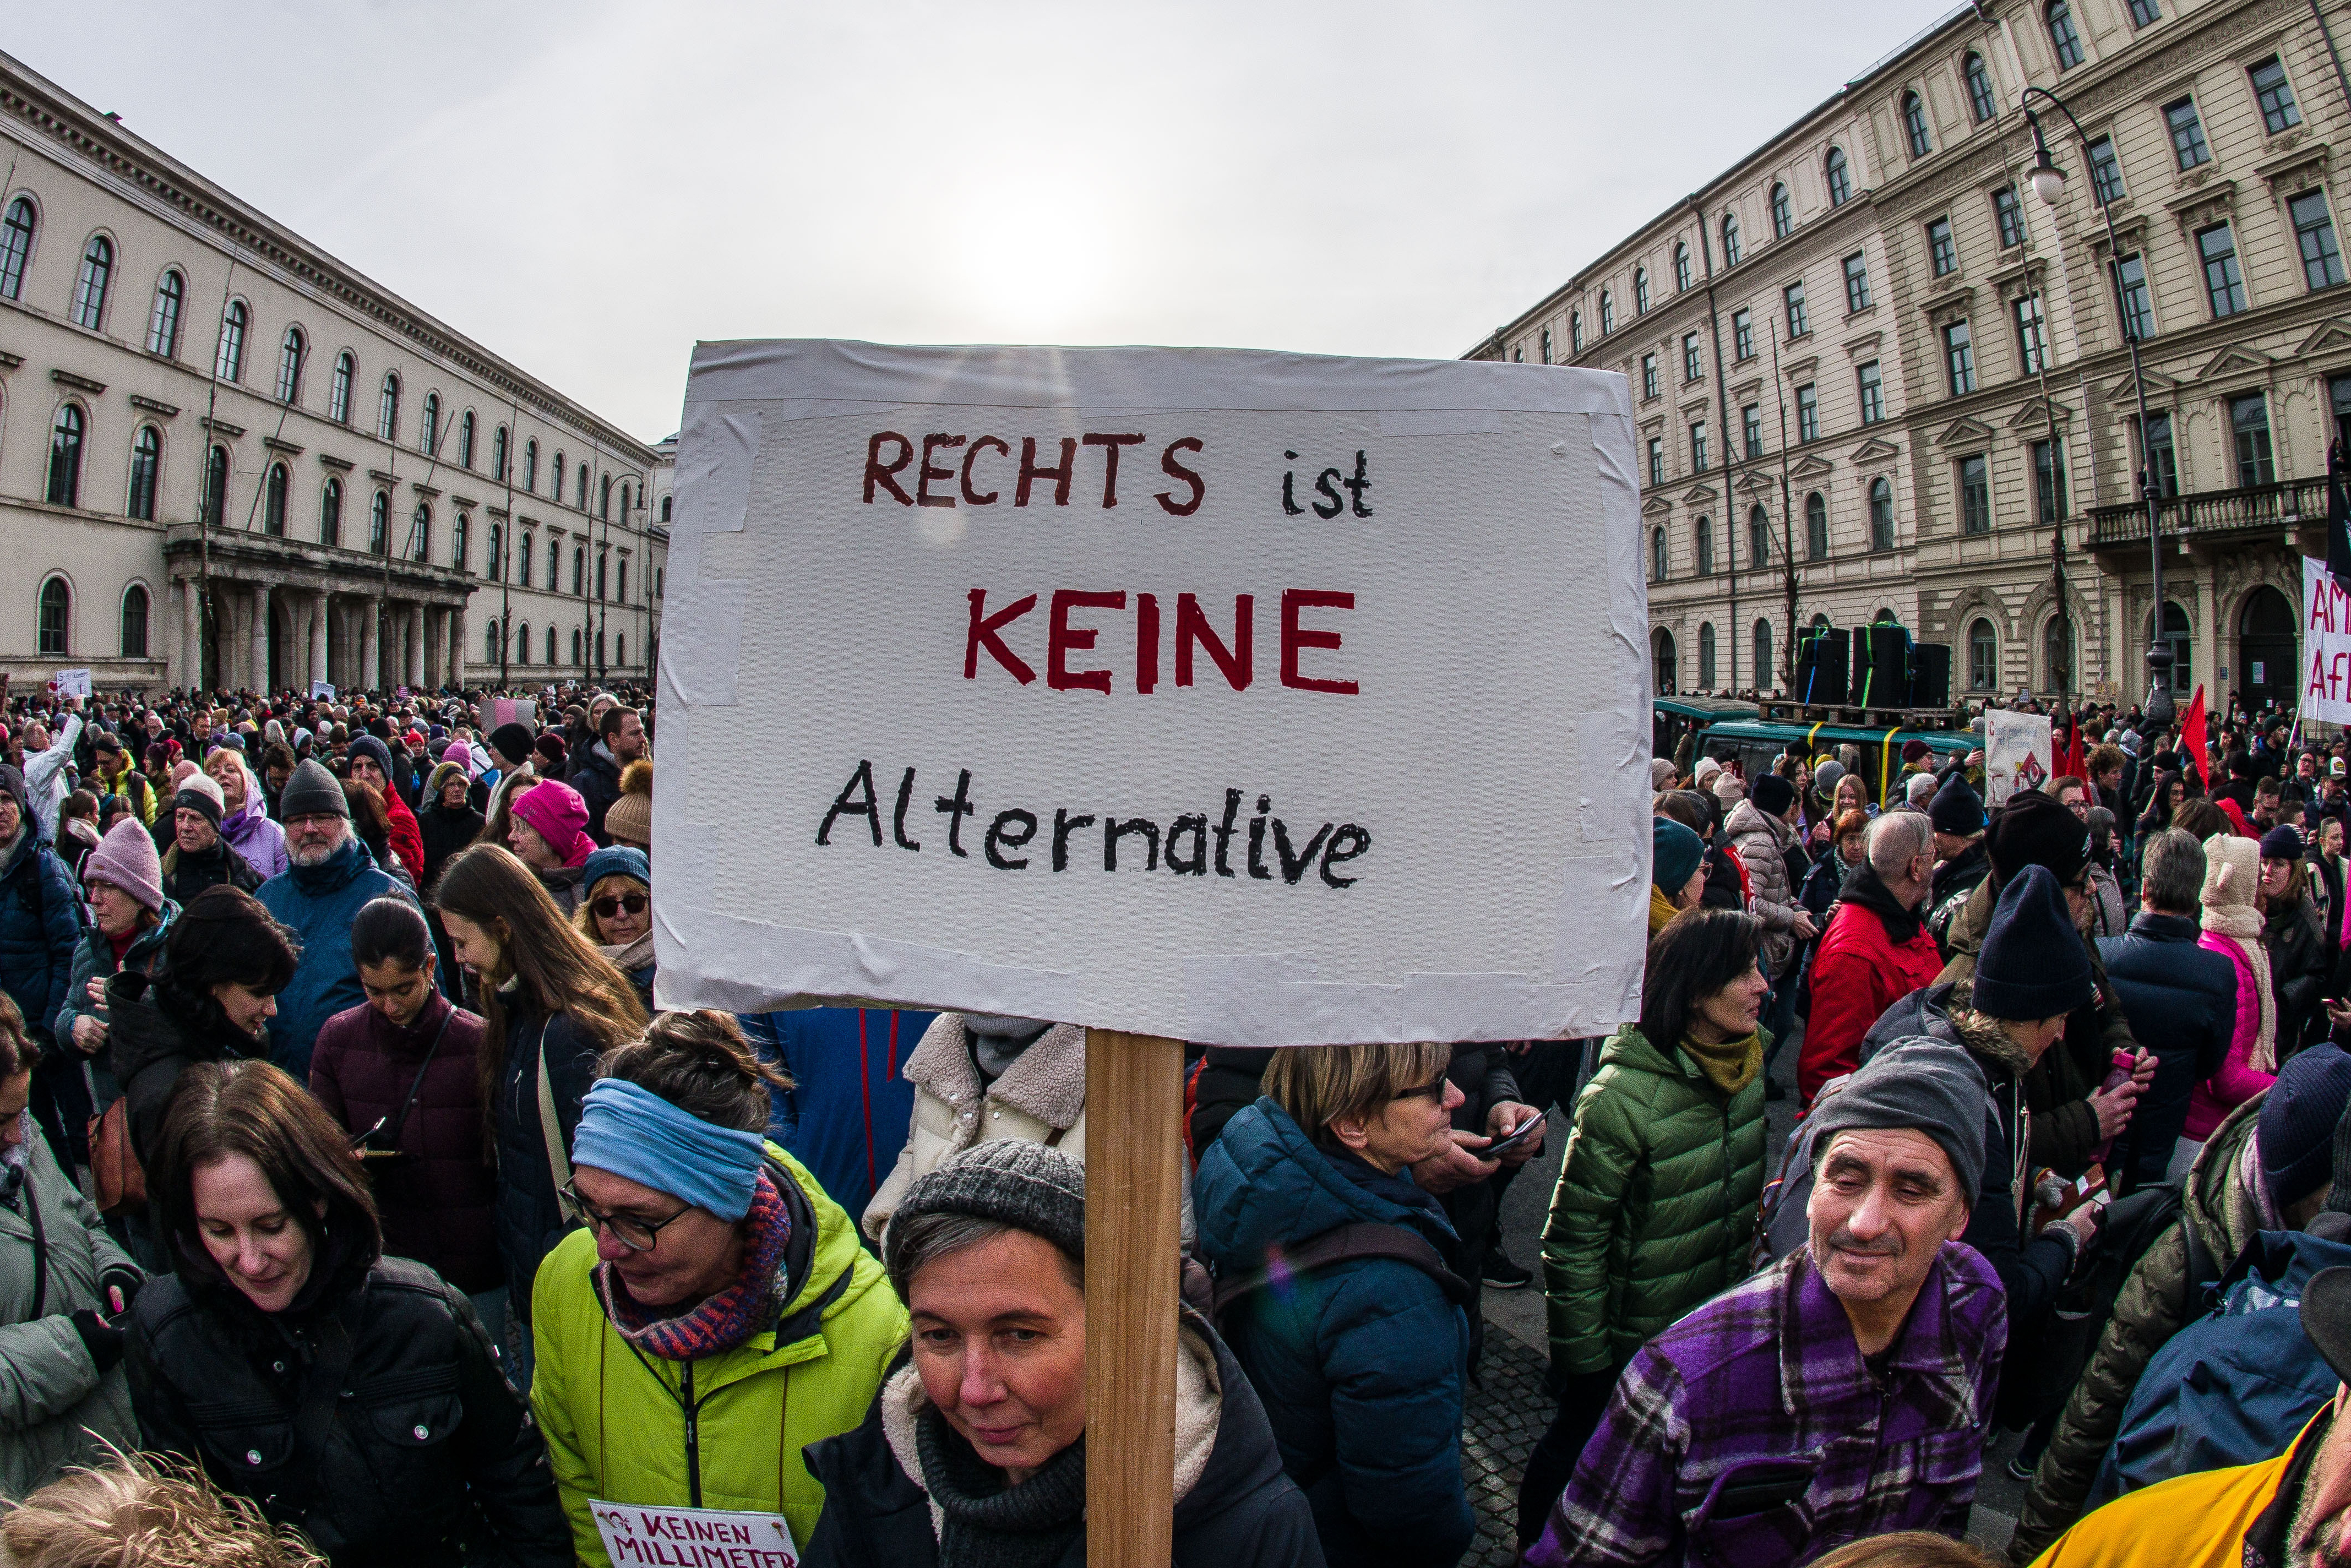 Demonstrierende gegen die AfD, zentral wird ein Plakat mit der Aufschrift "Rechts ist keine Alternative" hochgehalten